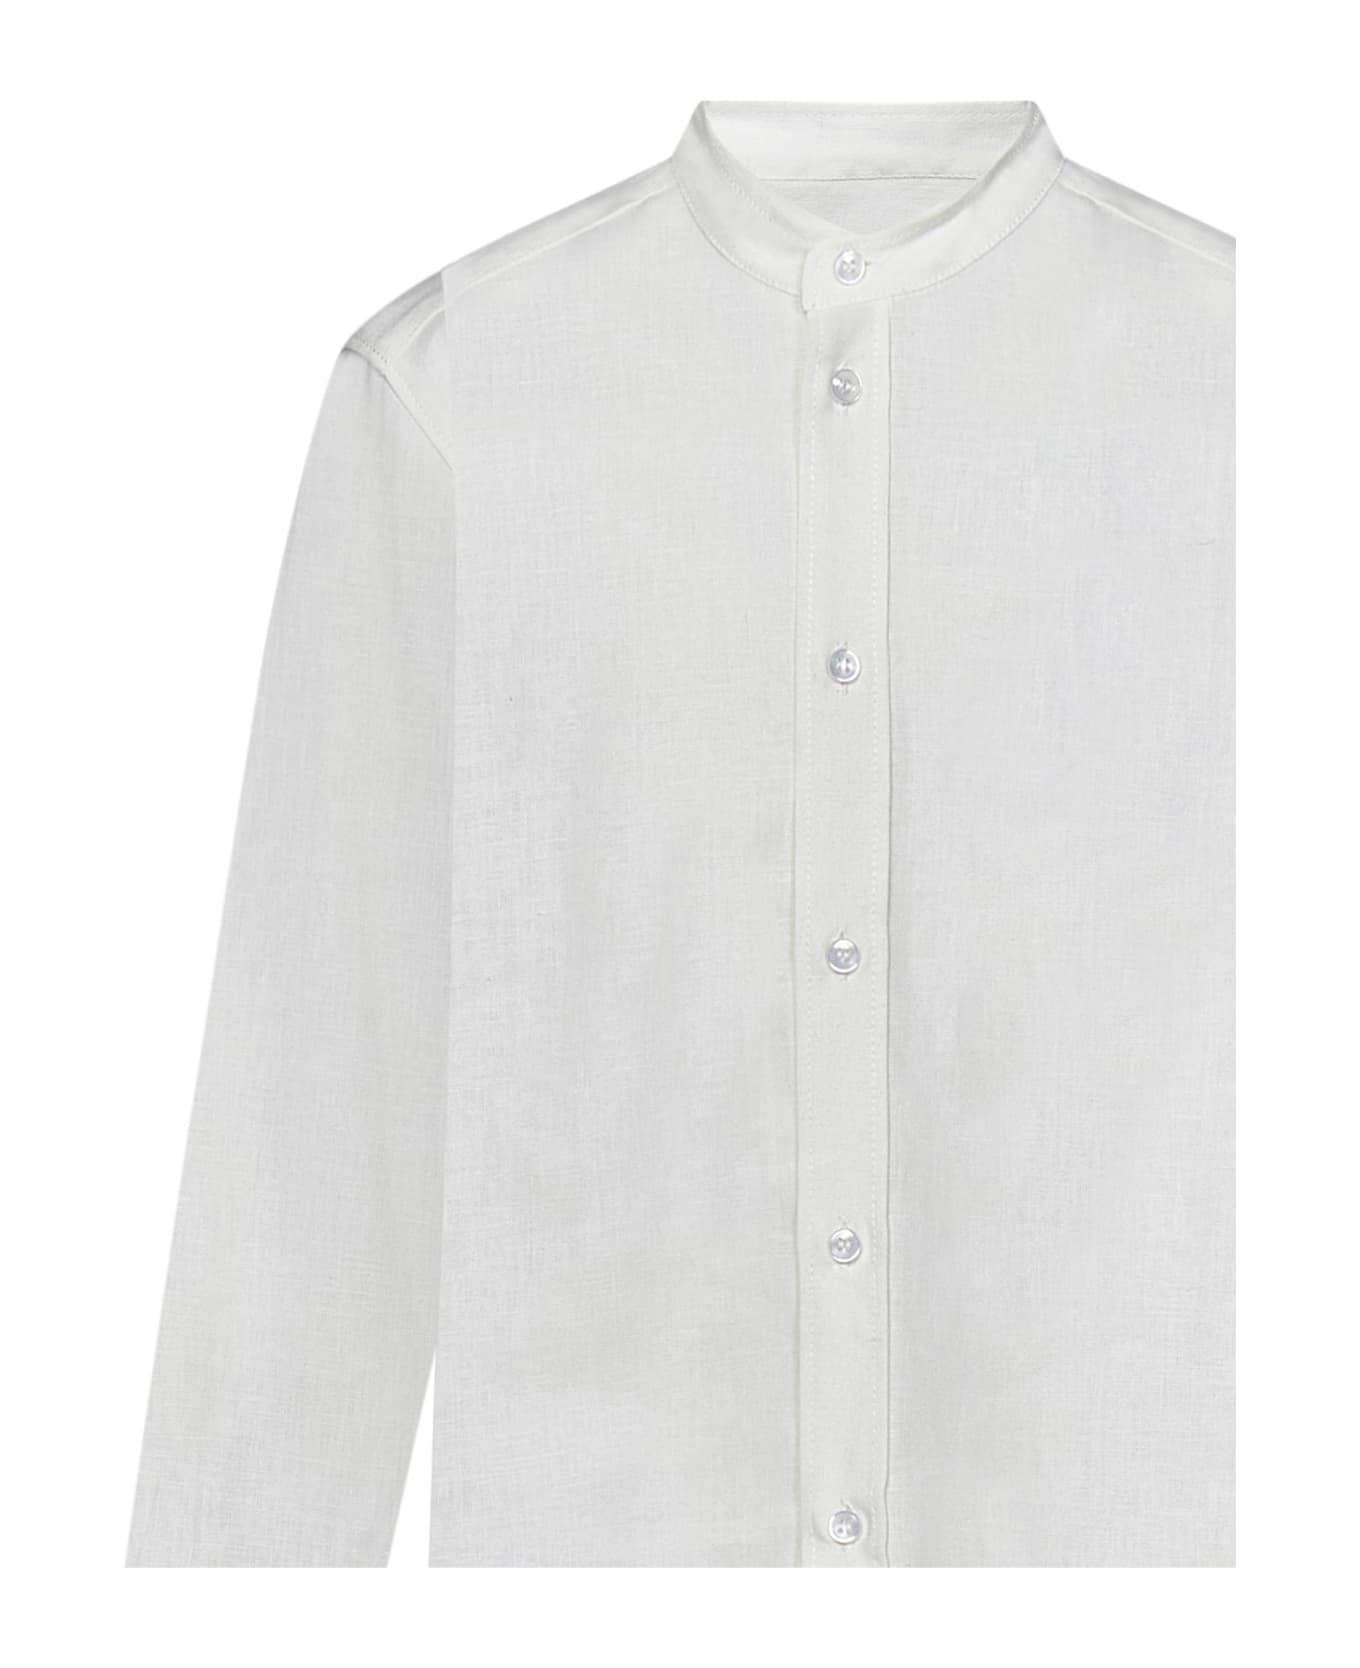 Dondup Kids Shirt - White